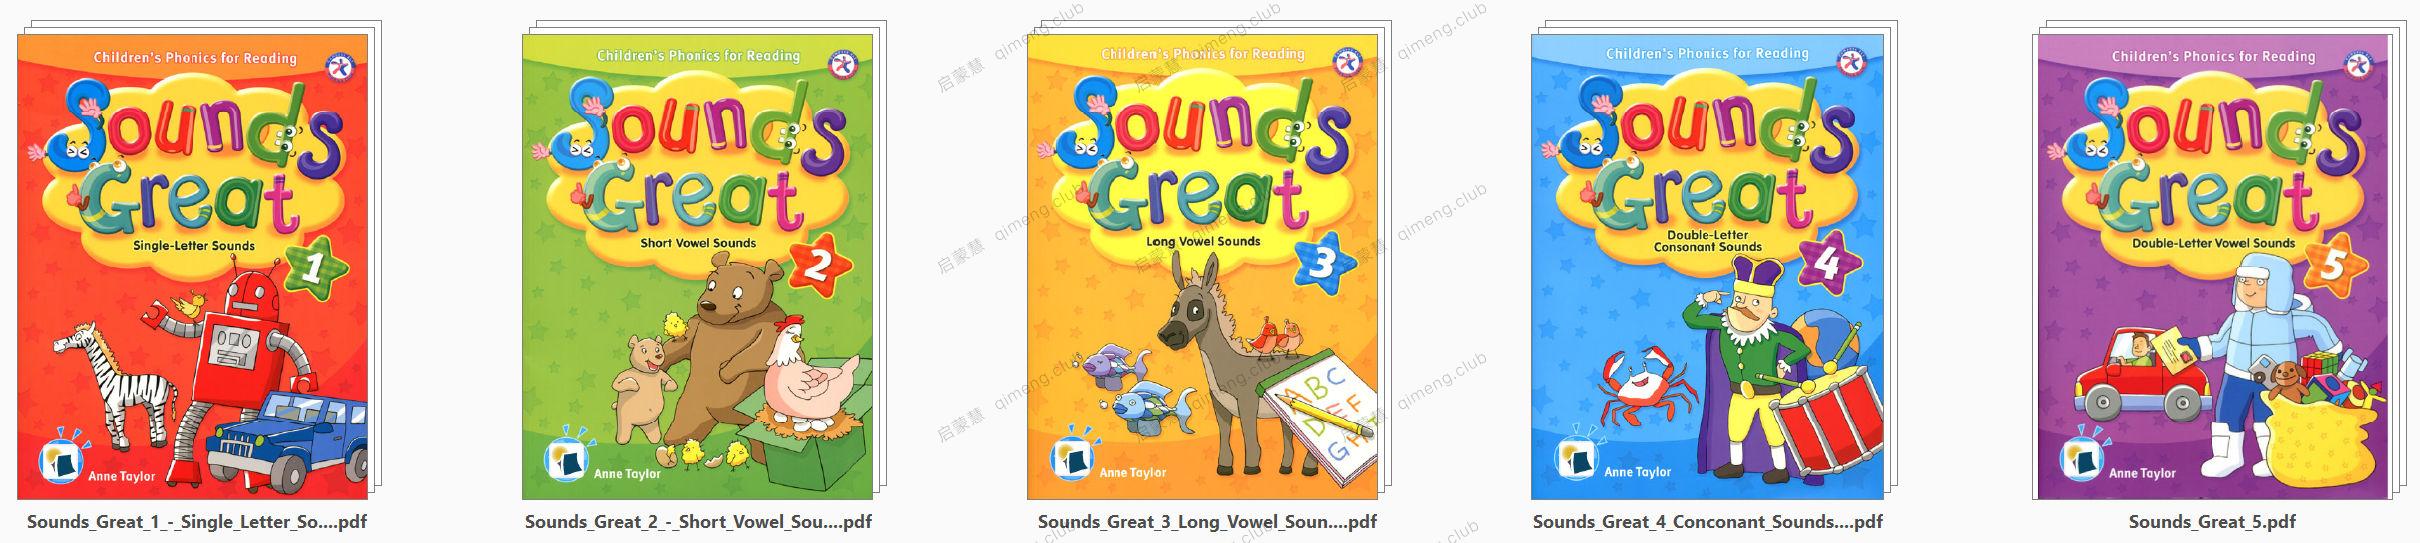 更适合中国儿童的自然拼读教材《Sounds Great 》L1-5全套资源 学生书+练习册+音频+闪卡+阅读书